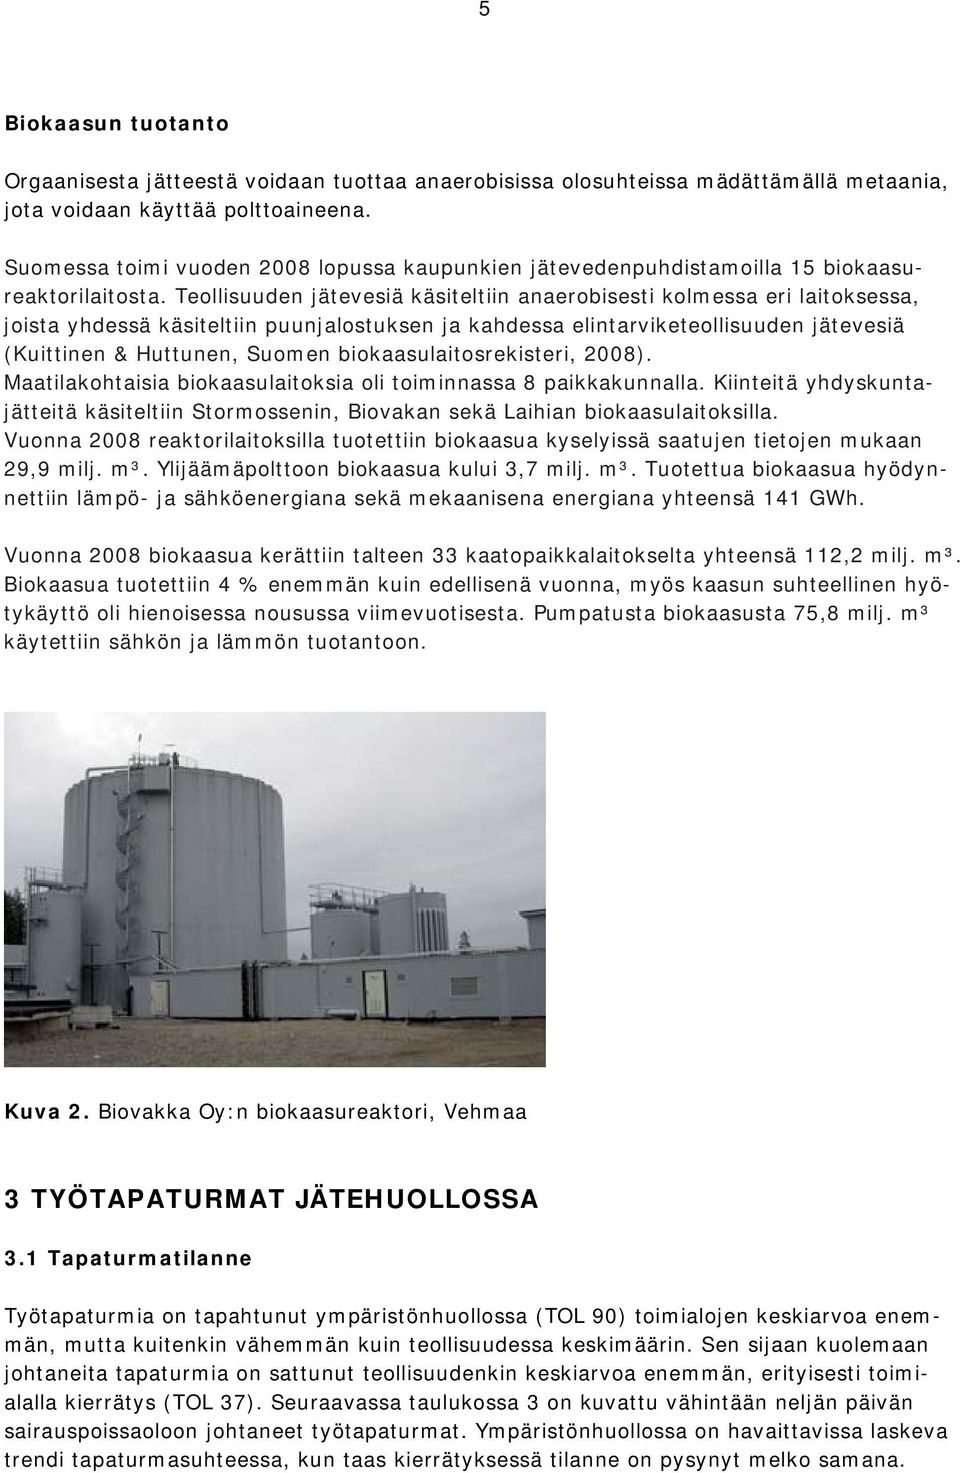 Teollisuuden jätevesiä käsiteltiin anaerobisesti kolmessa eri laitoksessa, joista yhdessä käsiteltiin puunjalostuksen ja kahdessa elintarviketeollisuuden jätevesiä (Kuittinen & Huttunen, Suomen